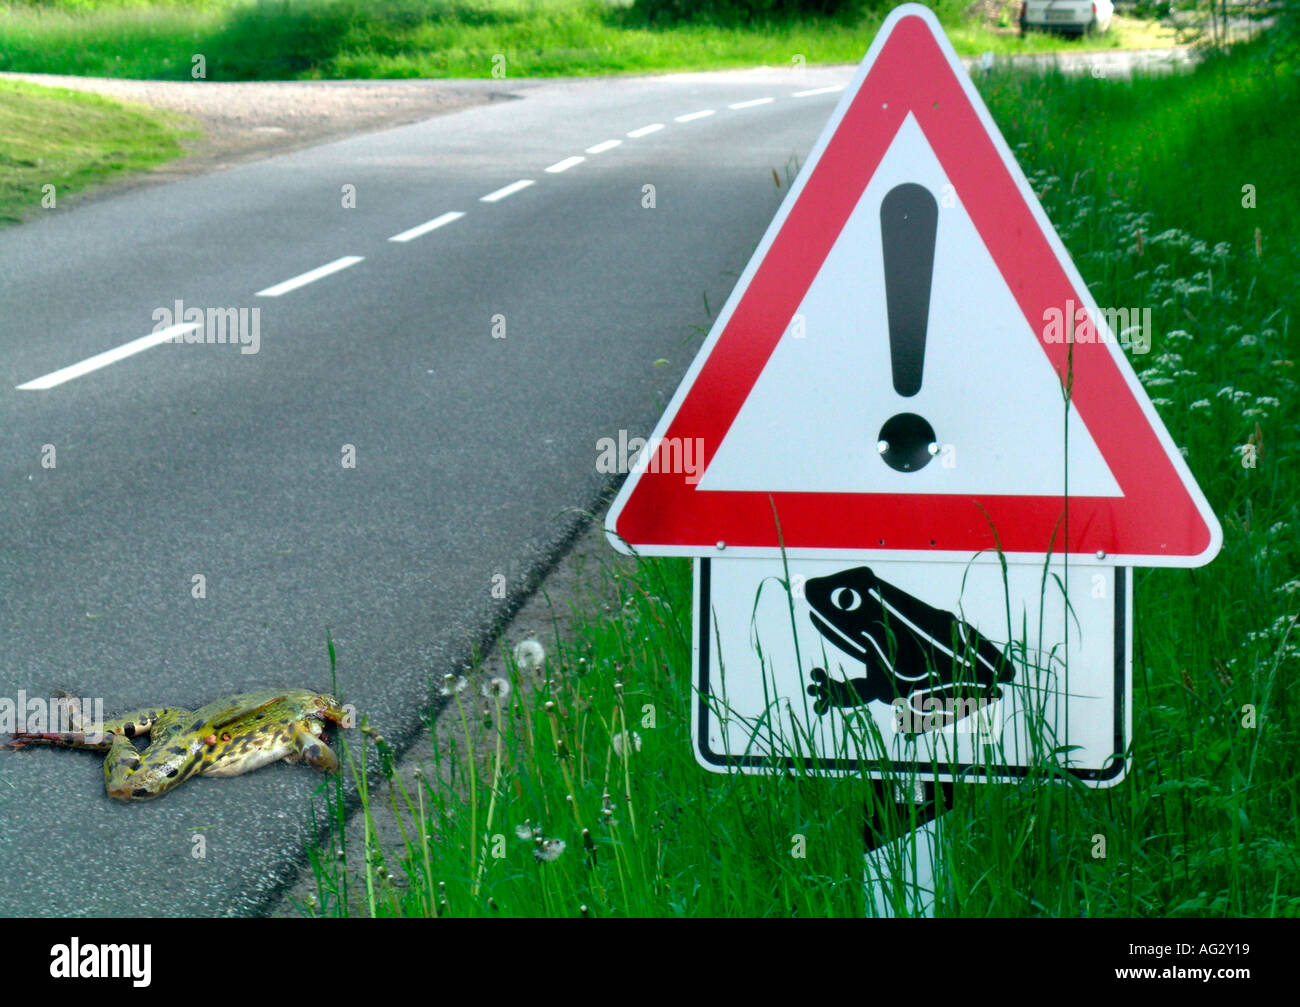 Bildresultat för frog cross road